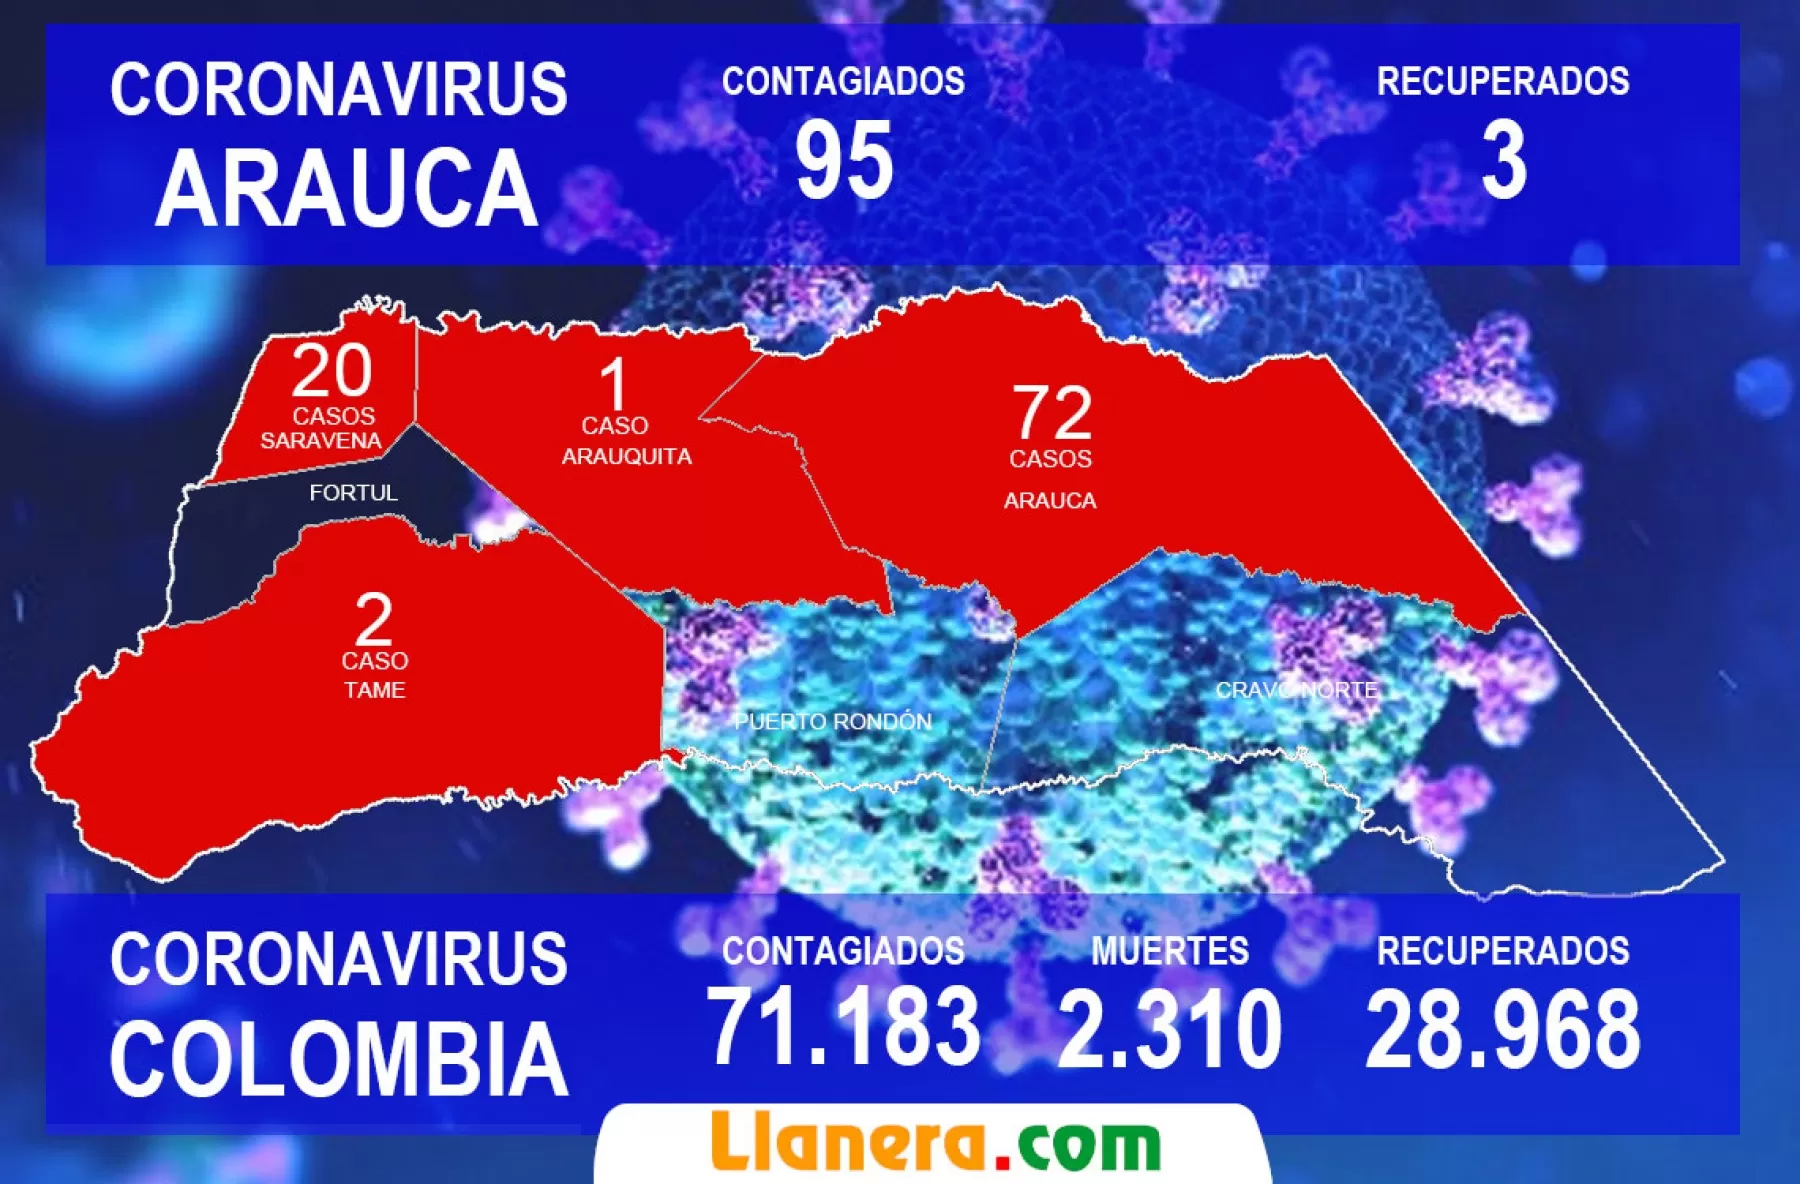 En una semana Covid-19 disparado en Arauca por militares y trabajadores petroleros.